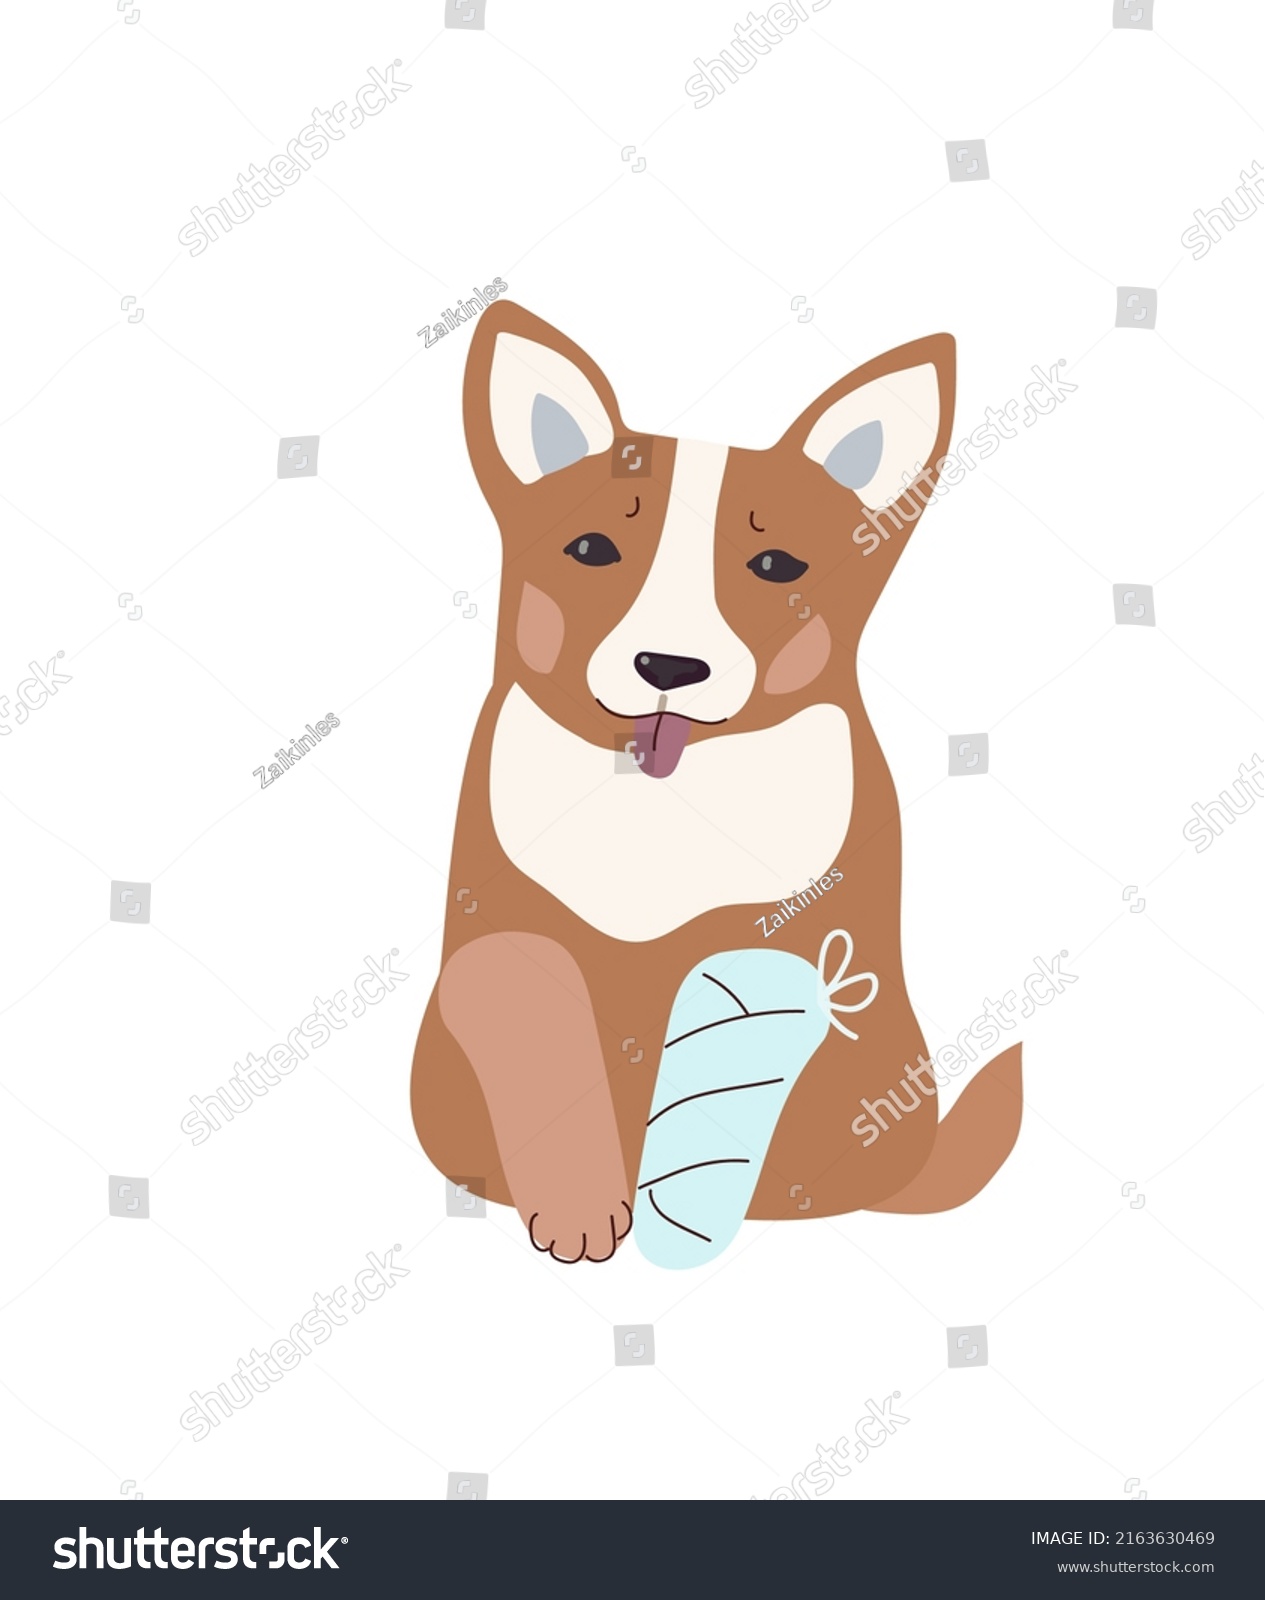 SVG of Dog broken paw. Online veterinary medicine.Cartoon vector illustration. svg